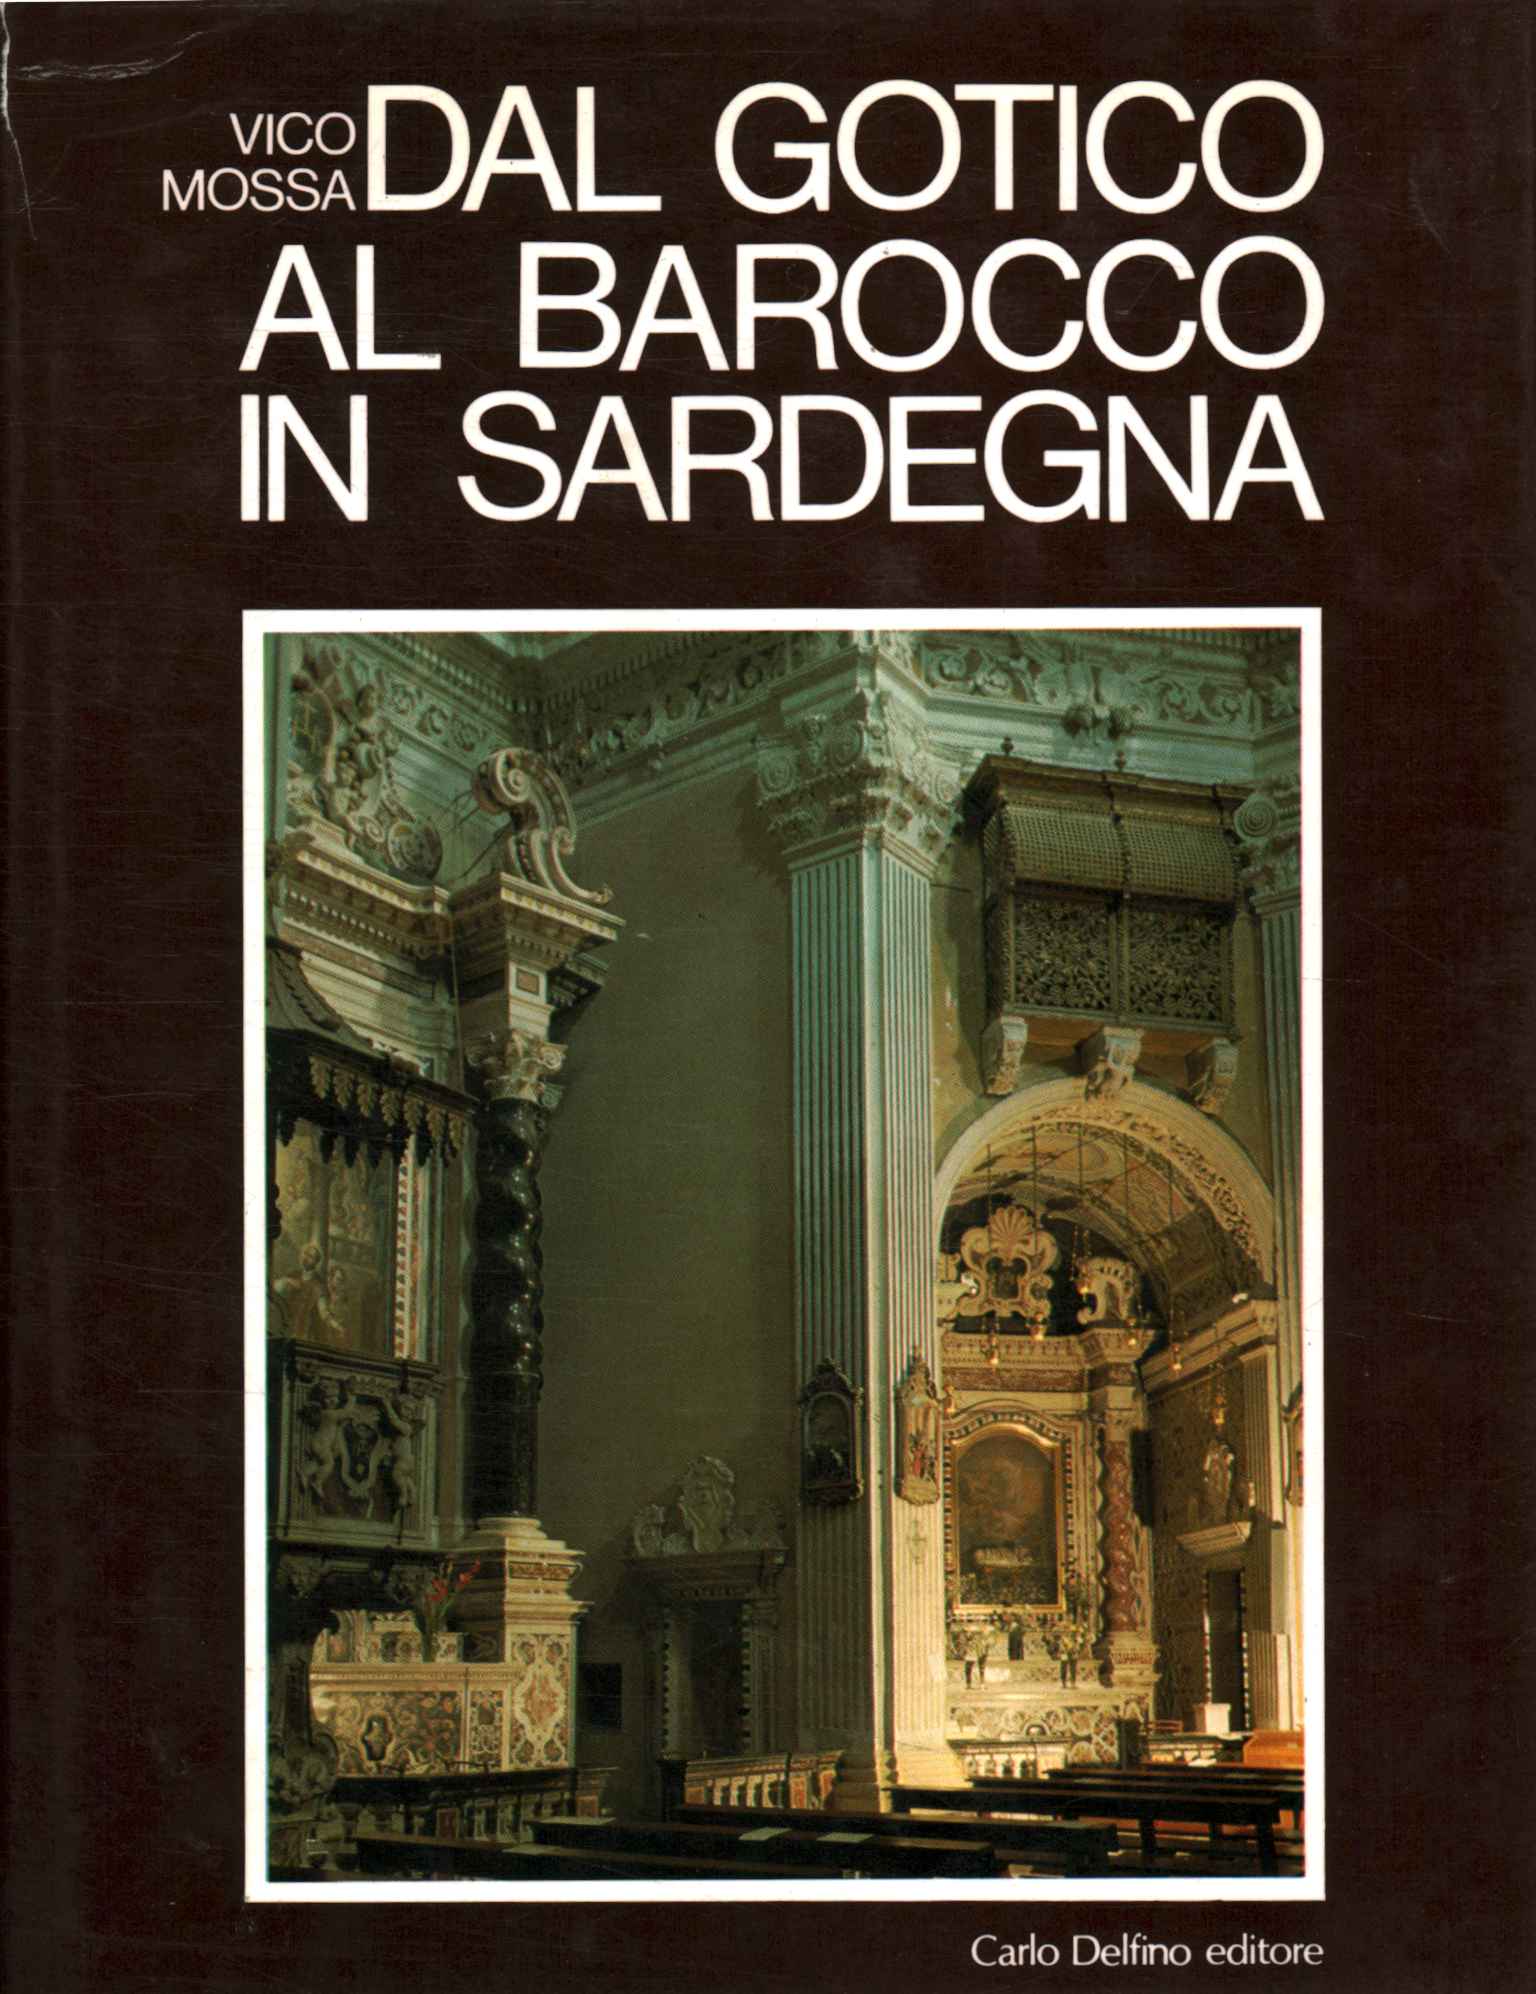 Von Gotik bis Barock auf Sardinien